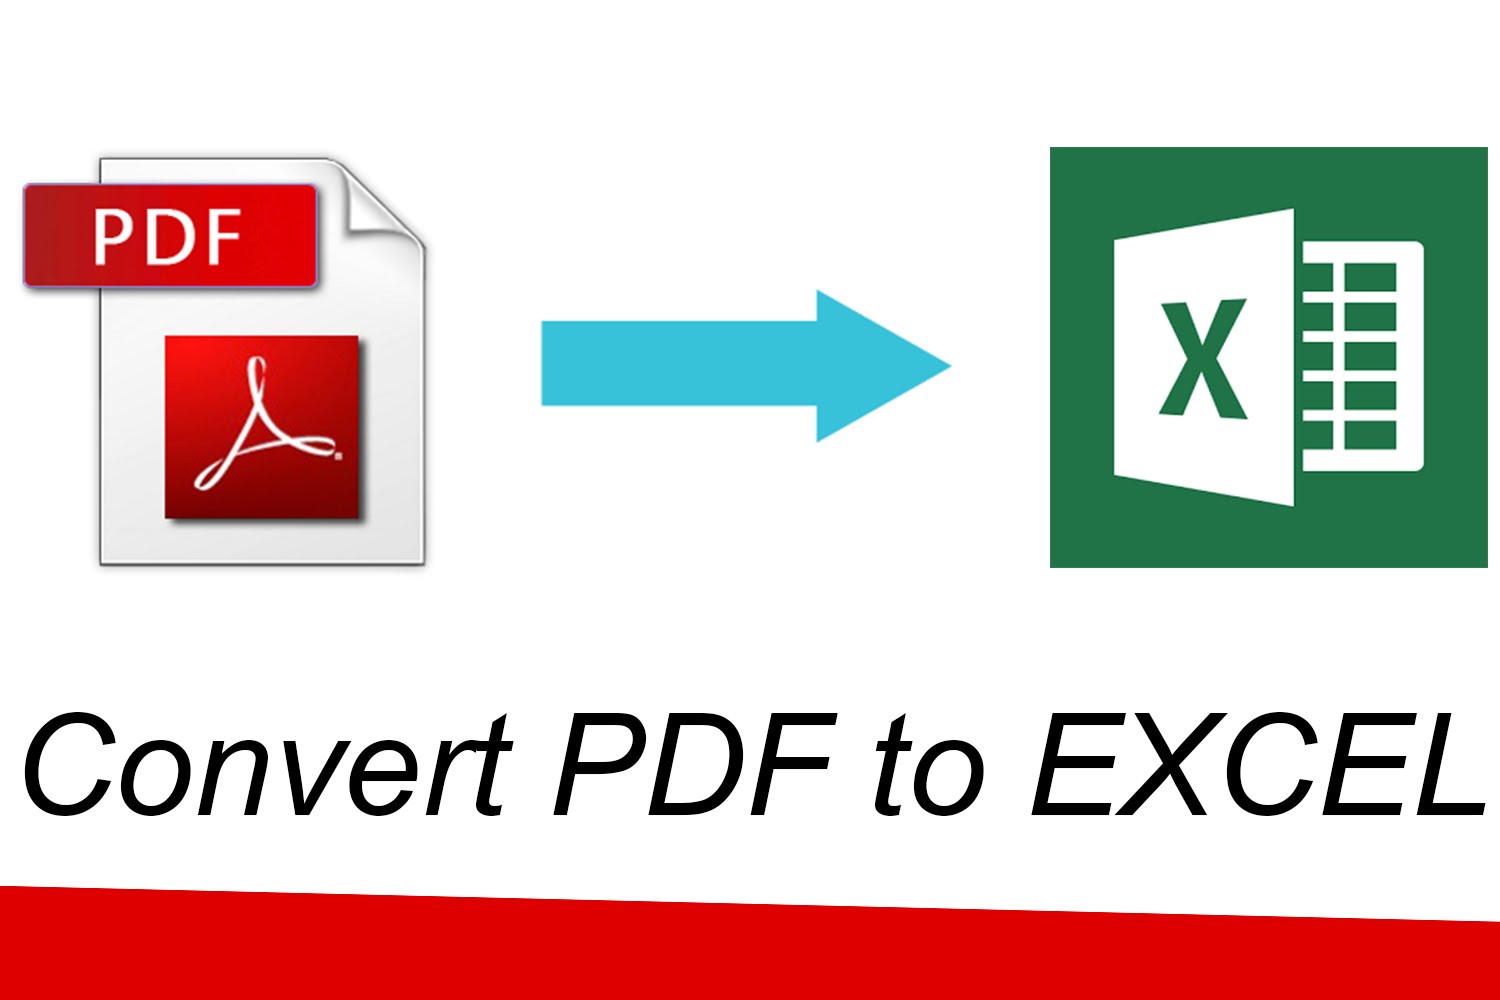 jpg to pdf converter free download